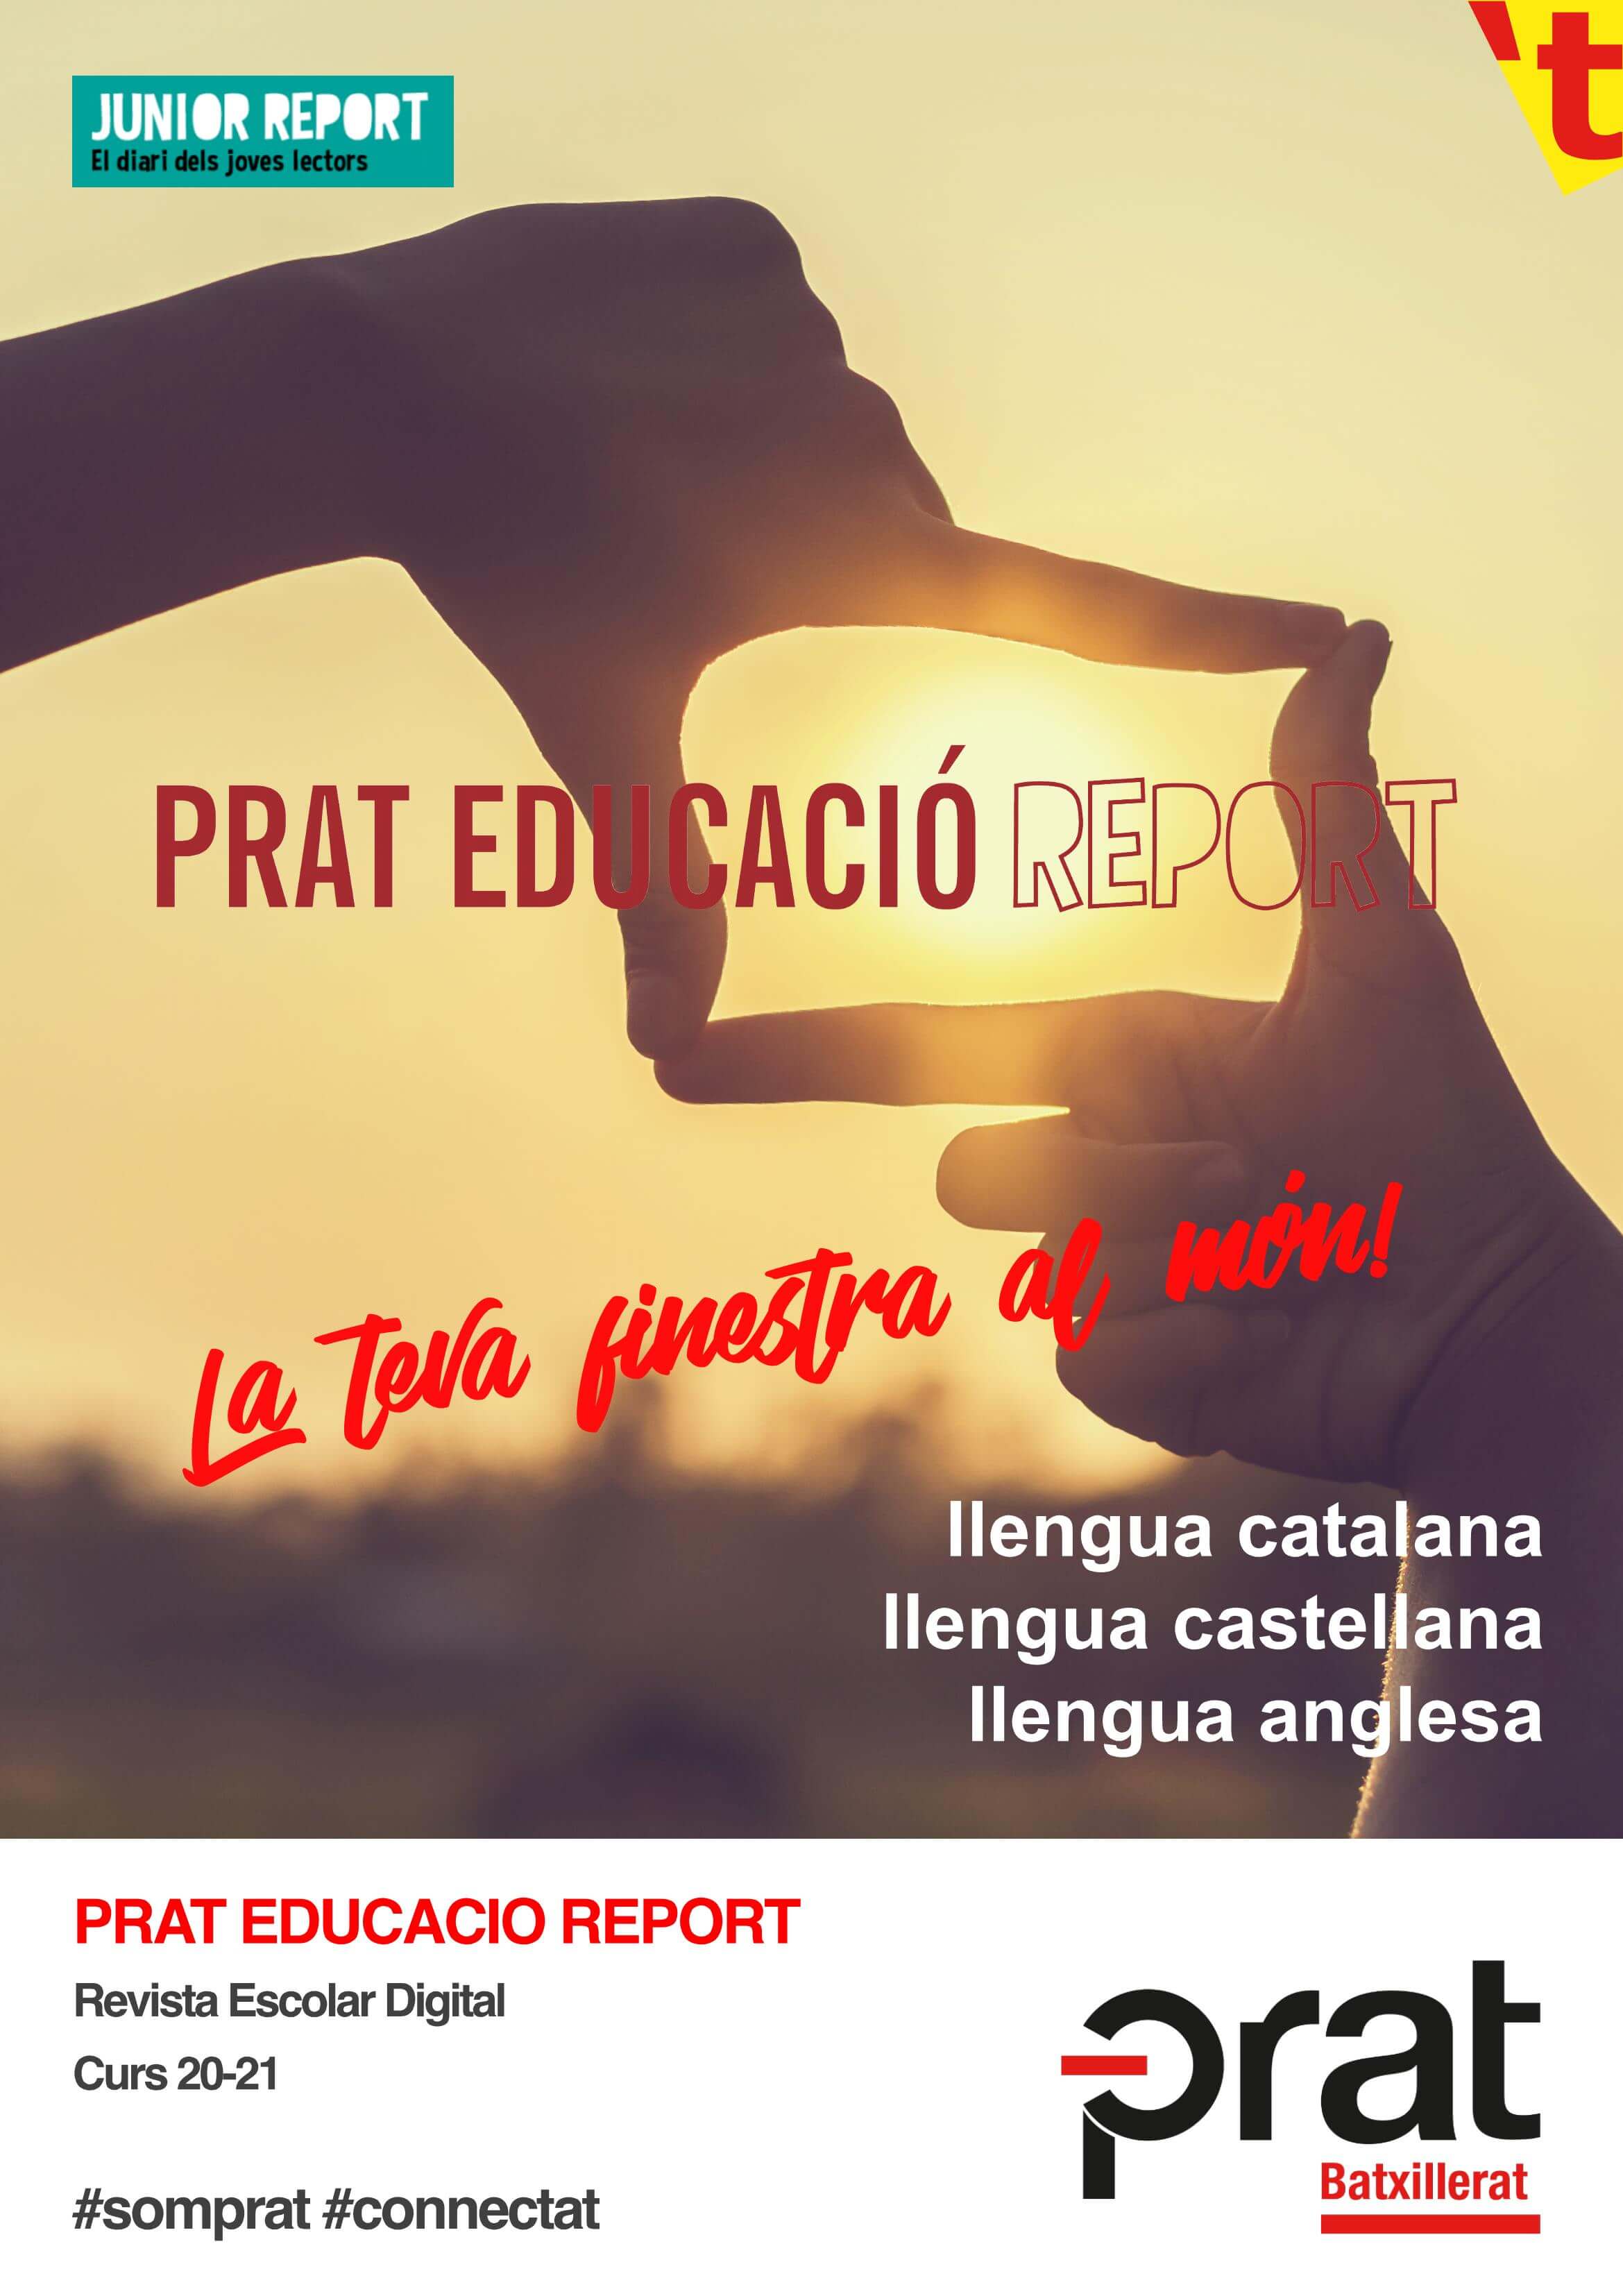 Prat Educació Report: Revista Escolar Digital